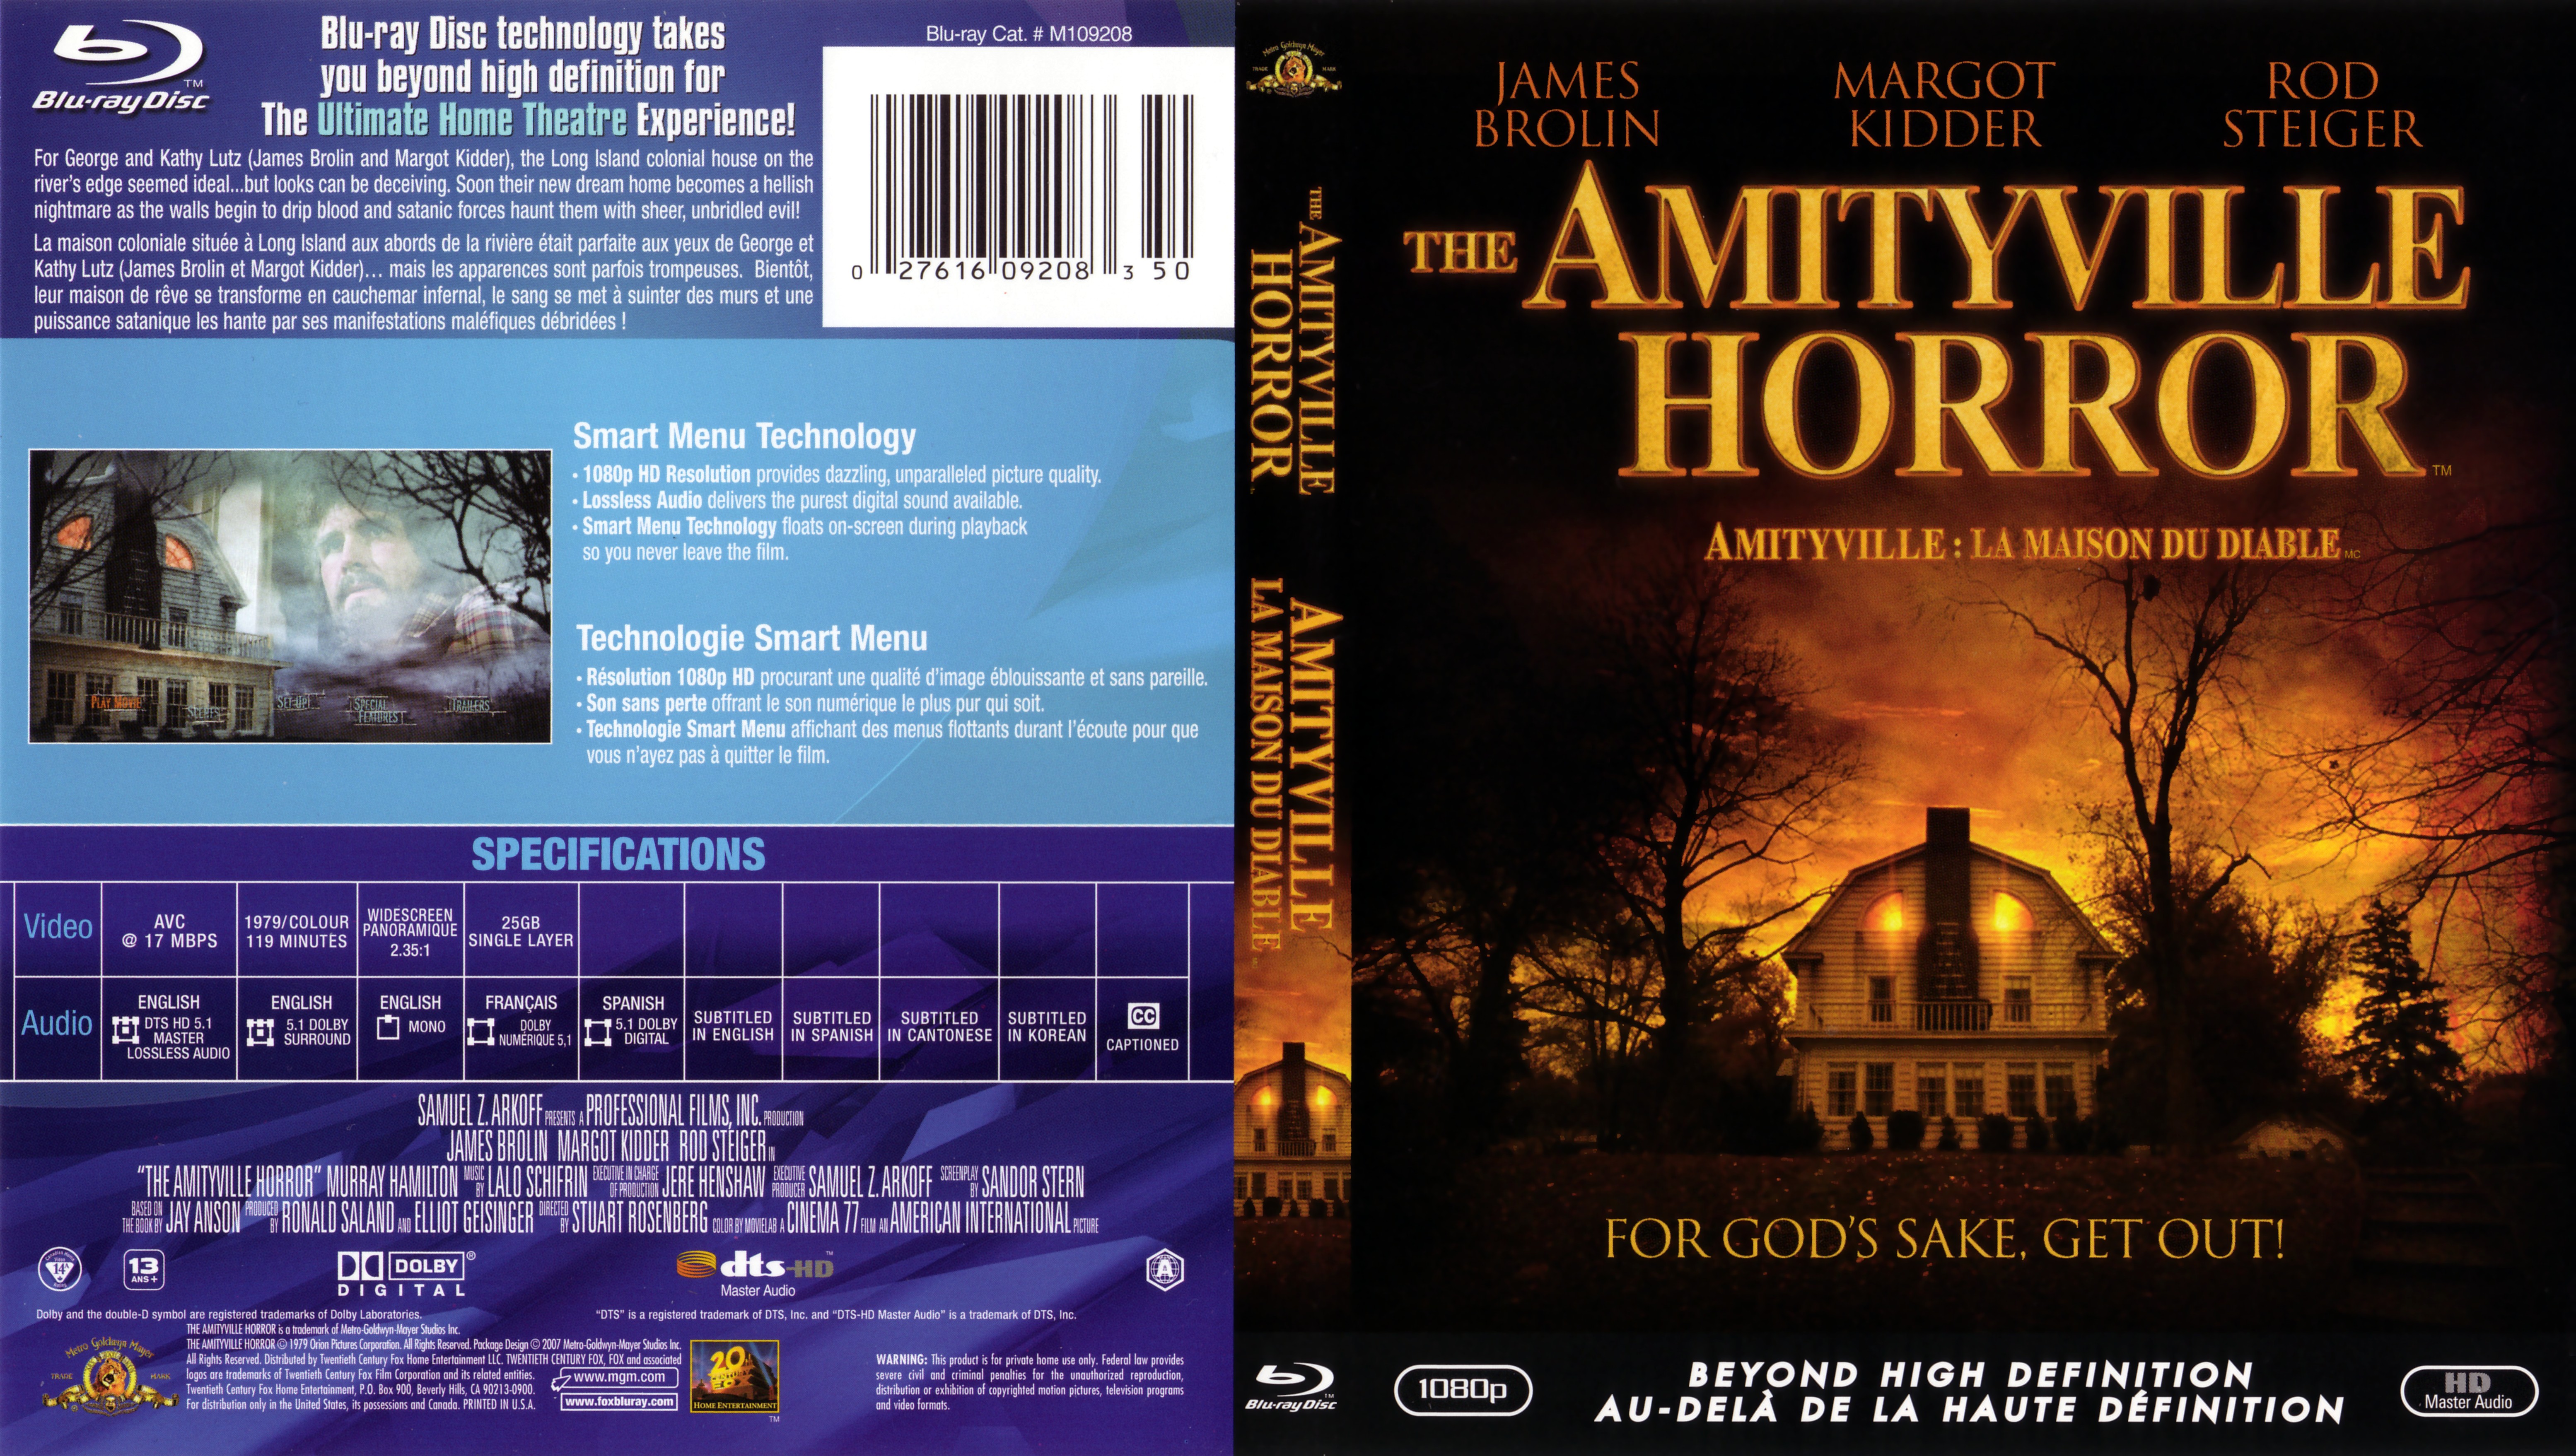 Aquette Dvd De The Amityville Horror